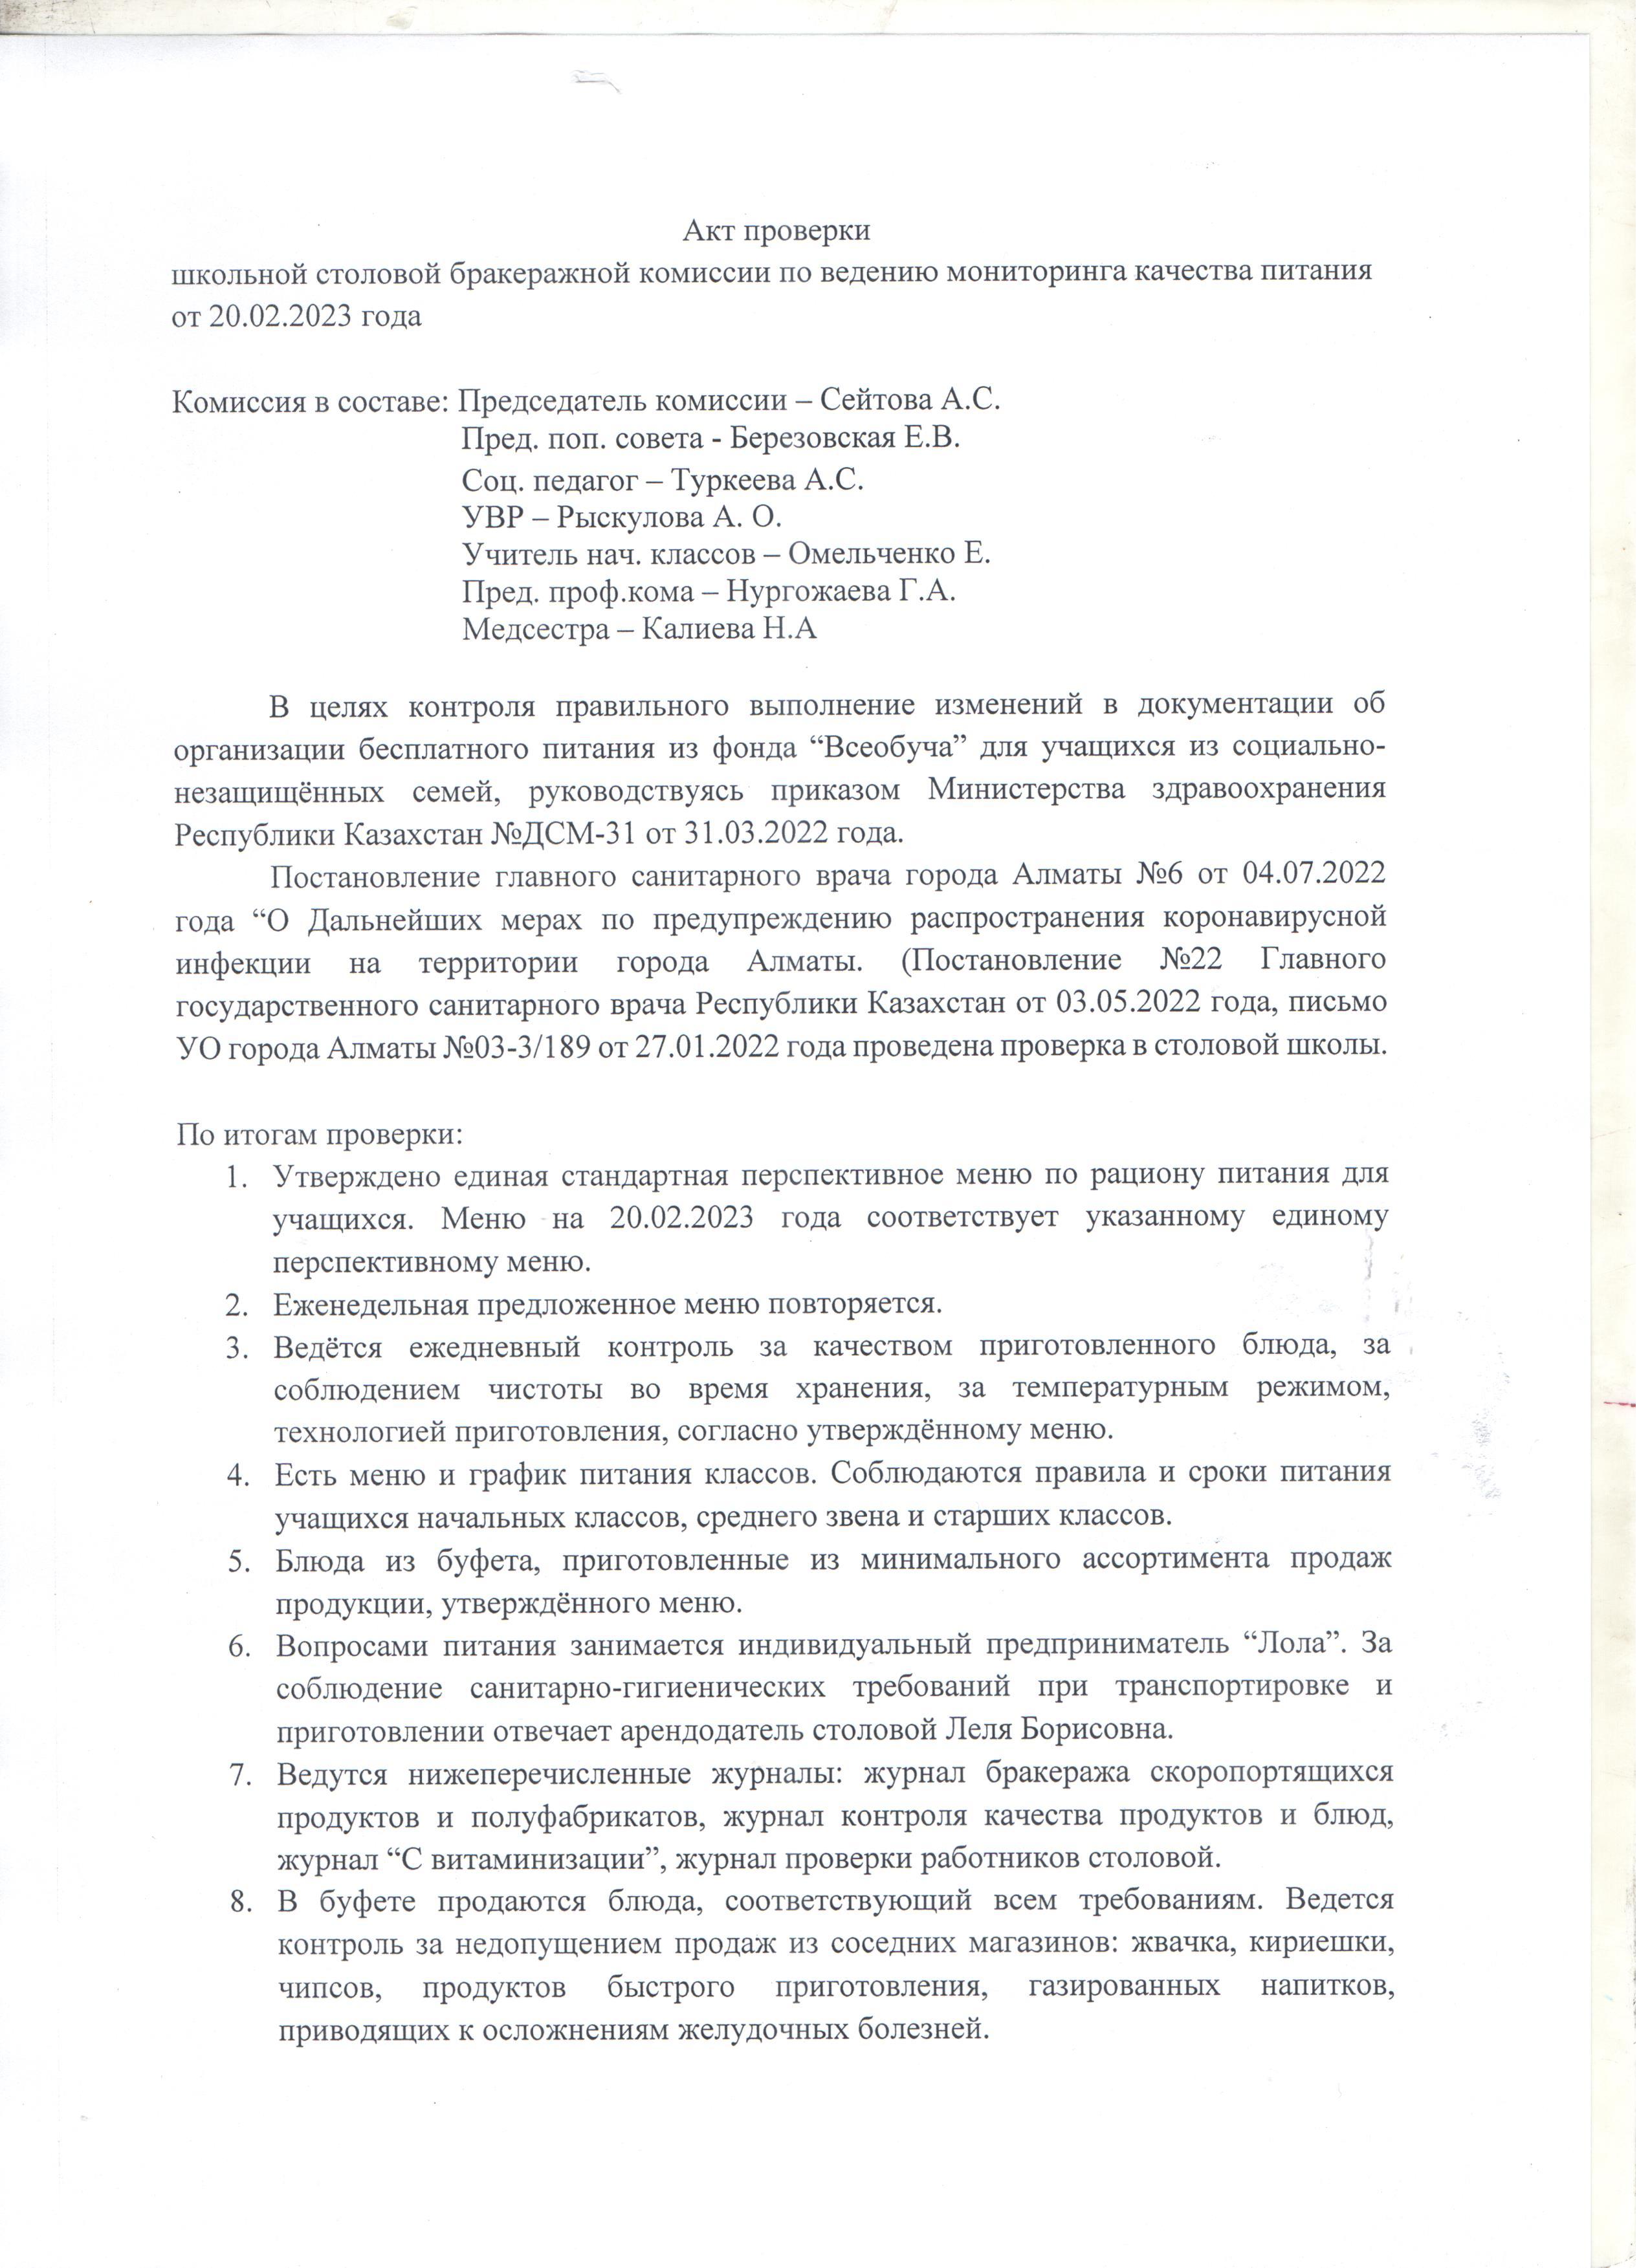 Акт проверки школьной столовой бракеражной комиссий от 20.02.2023 года